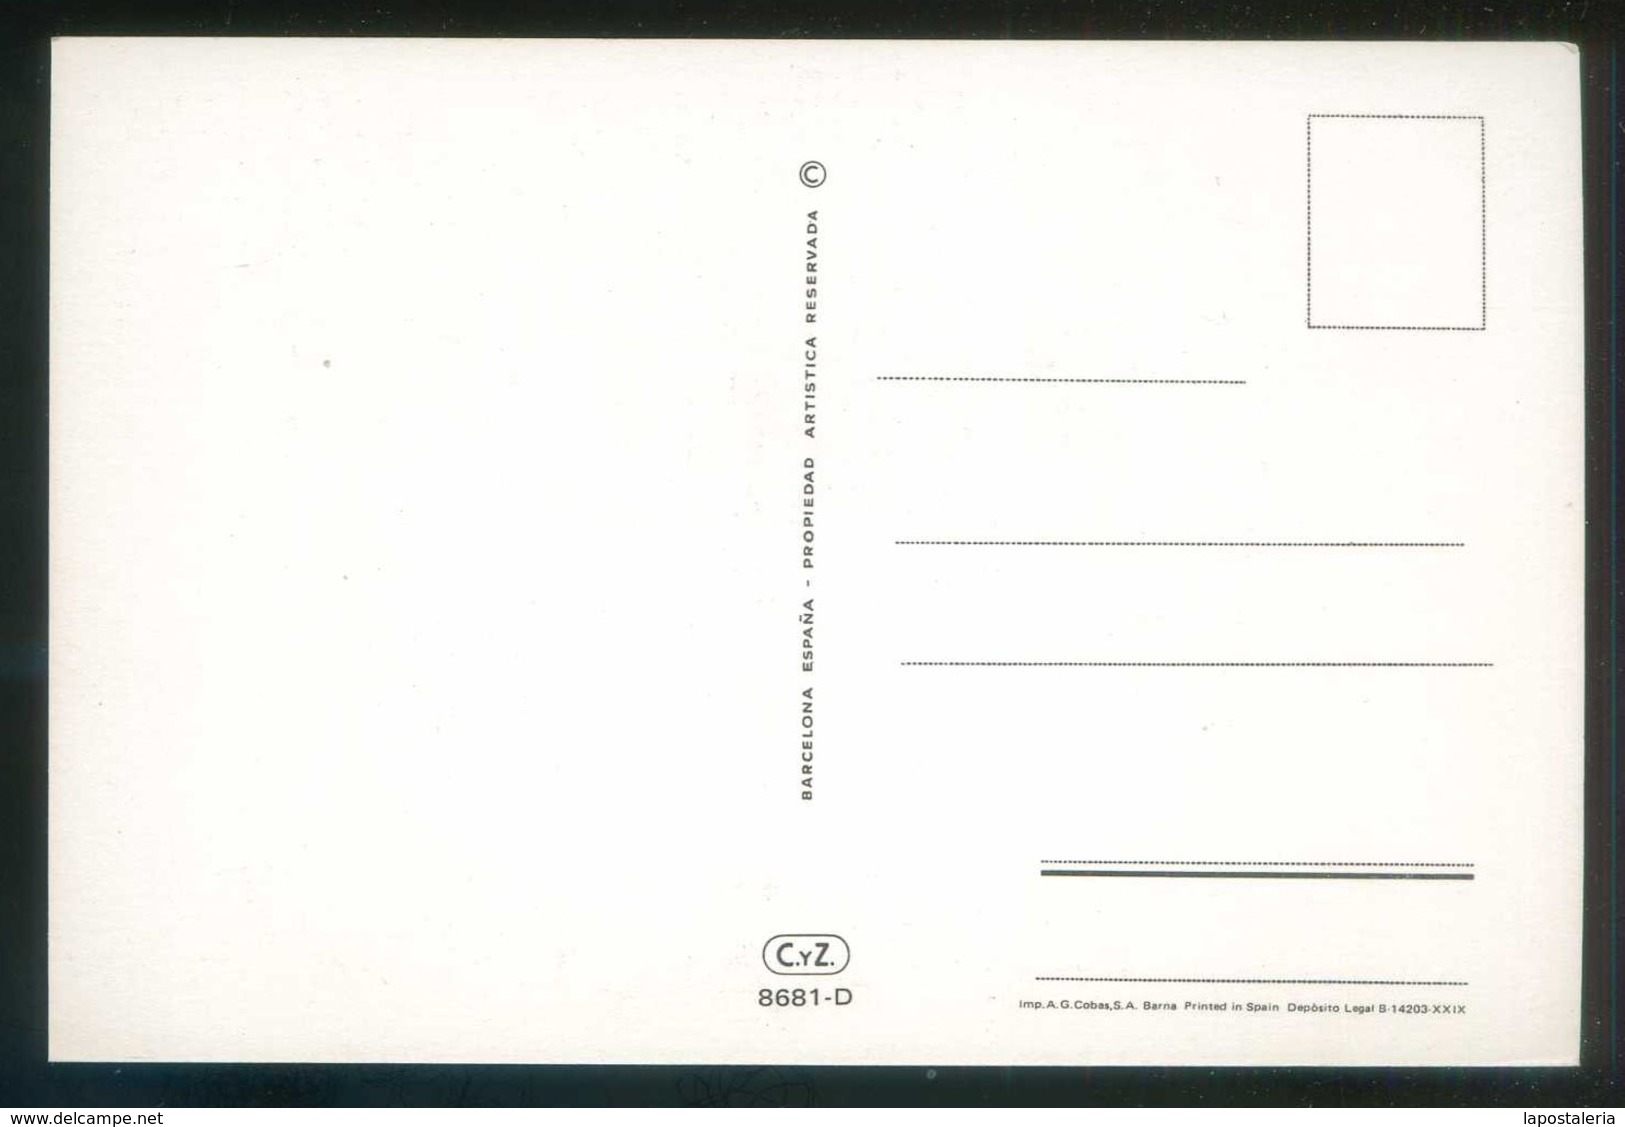 Ed. C. y Z. nº 8681- A al D. Serie completa de 4 postales. Nuevas.